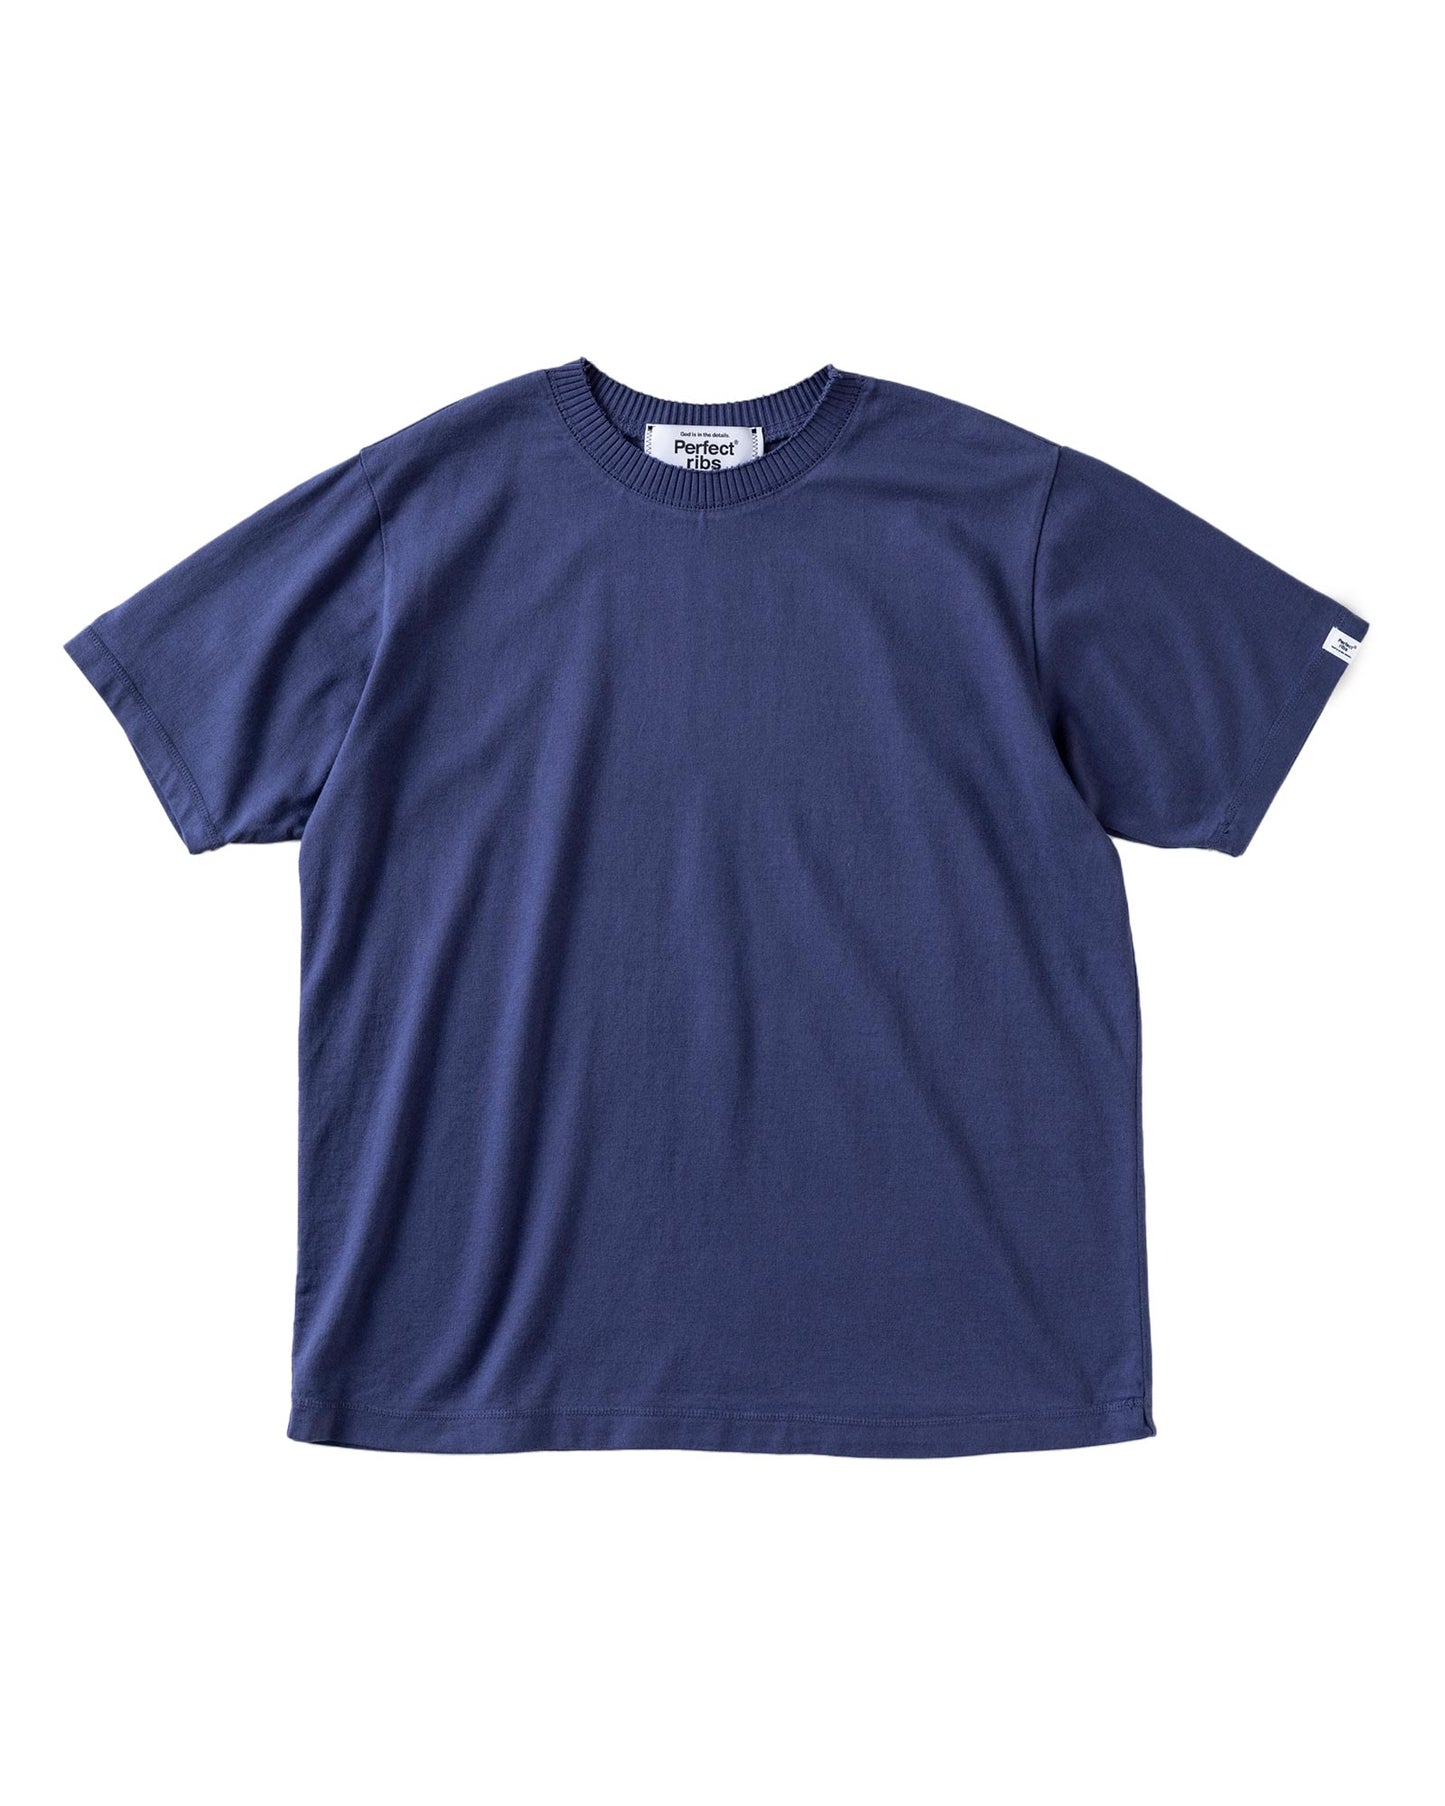 パーフェクトリブス/Basic Short Sleeve T Shirts/Tシャツ/Navy